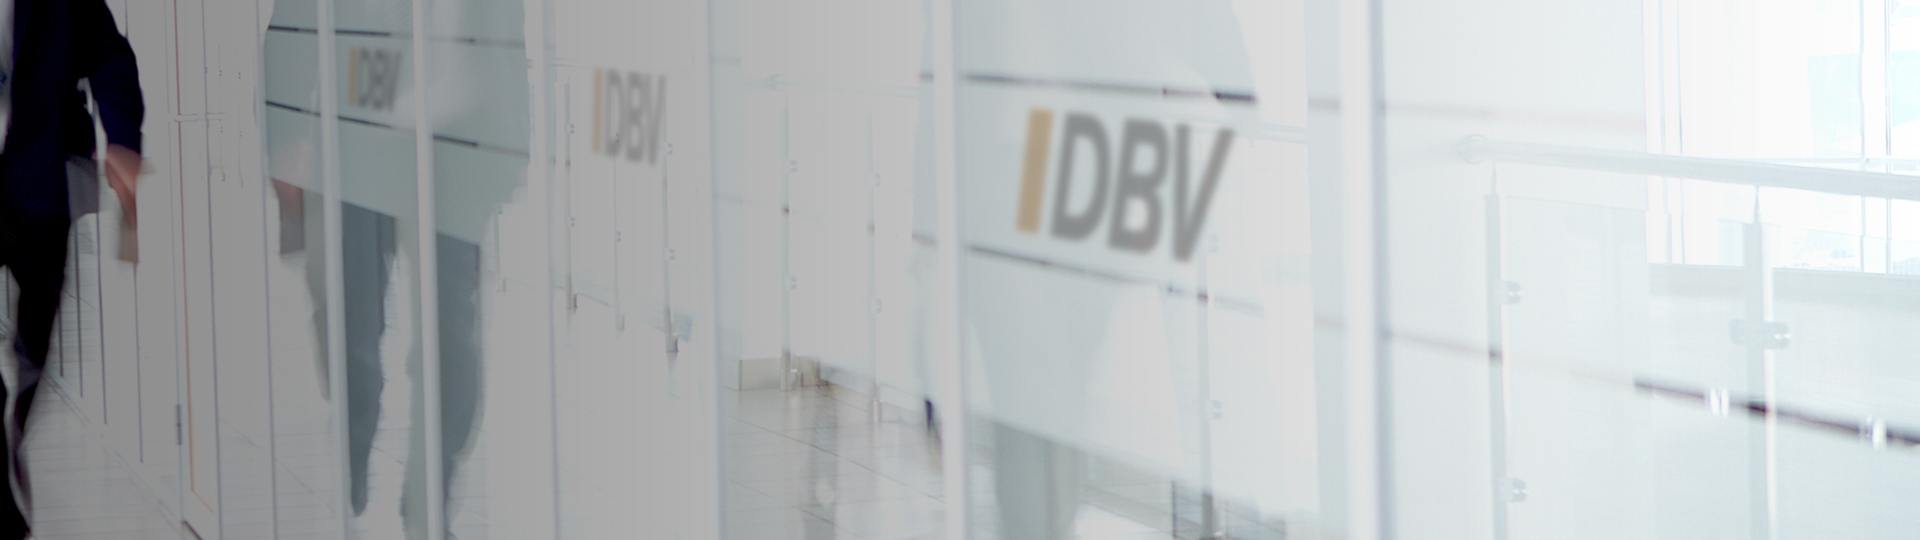 Dienstunfähigkeitsversicherung | DBV Mannheim Sascha Braun 